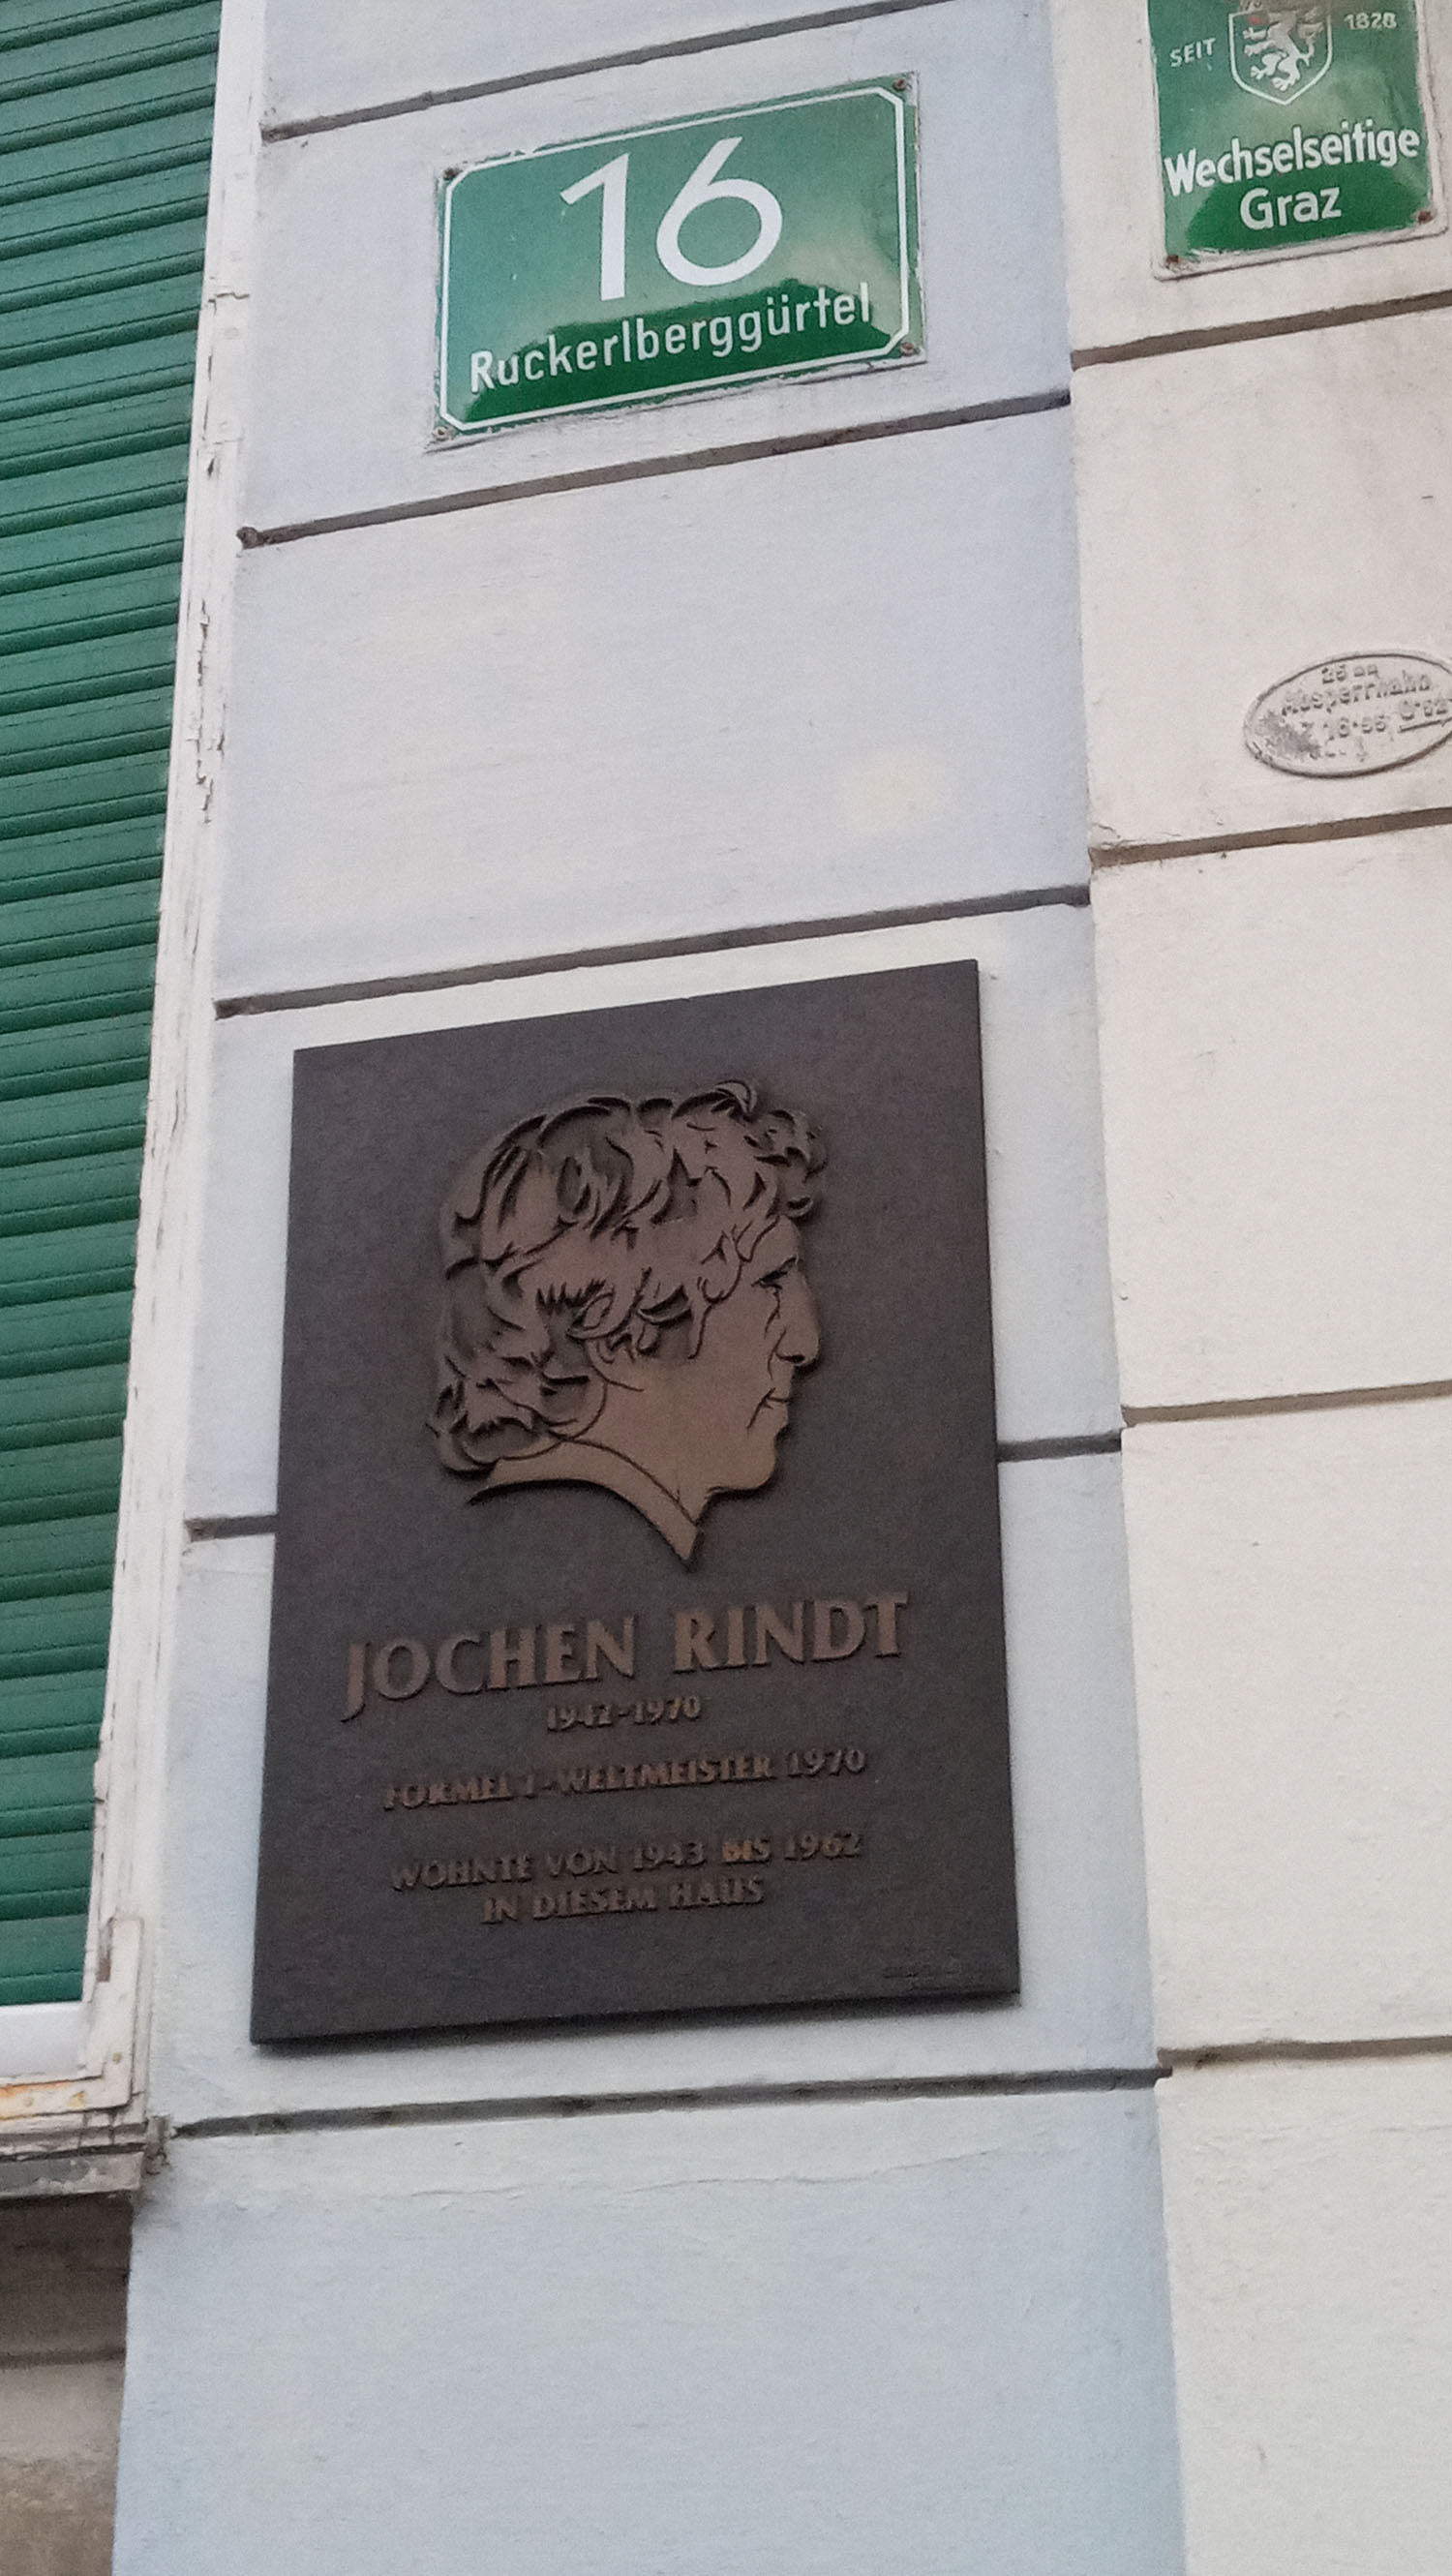 Die Jochen Rindt-Gedenktafel aus seinem Heimatbezirk St. Leonhard - dieses Bild steht unter "Mehr zum Thema" zum Download zur Verfügung